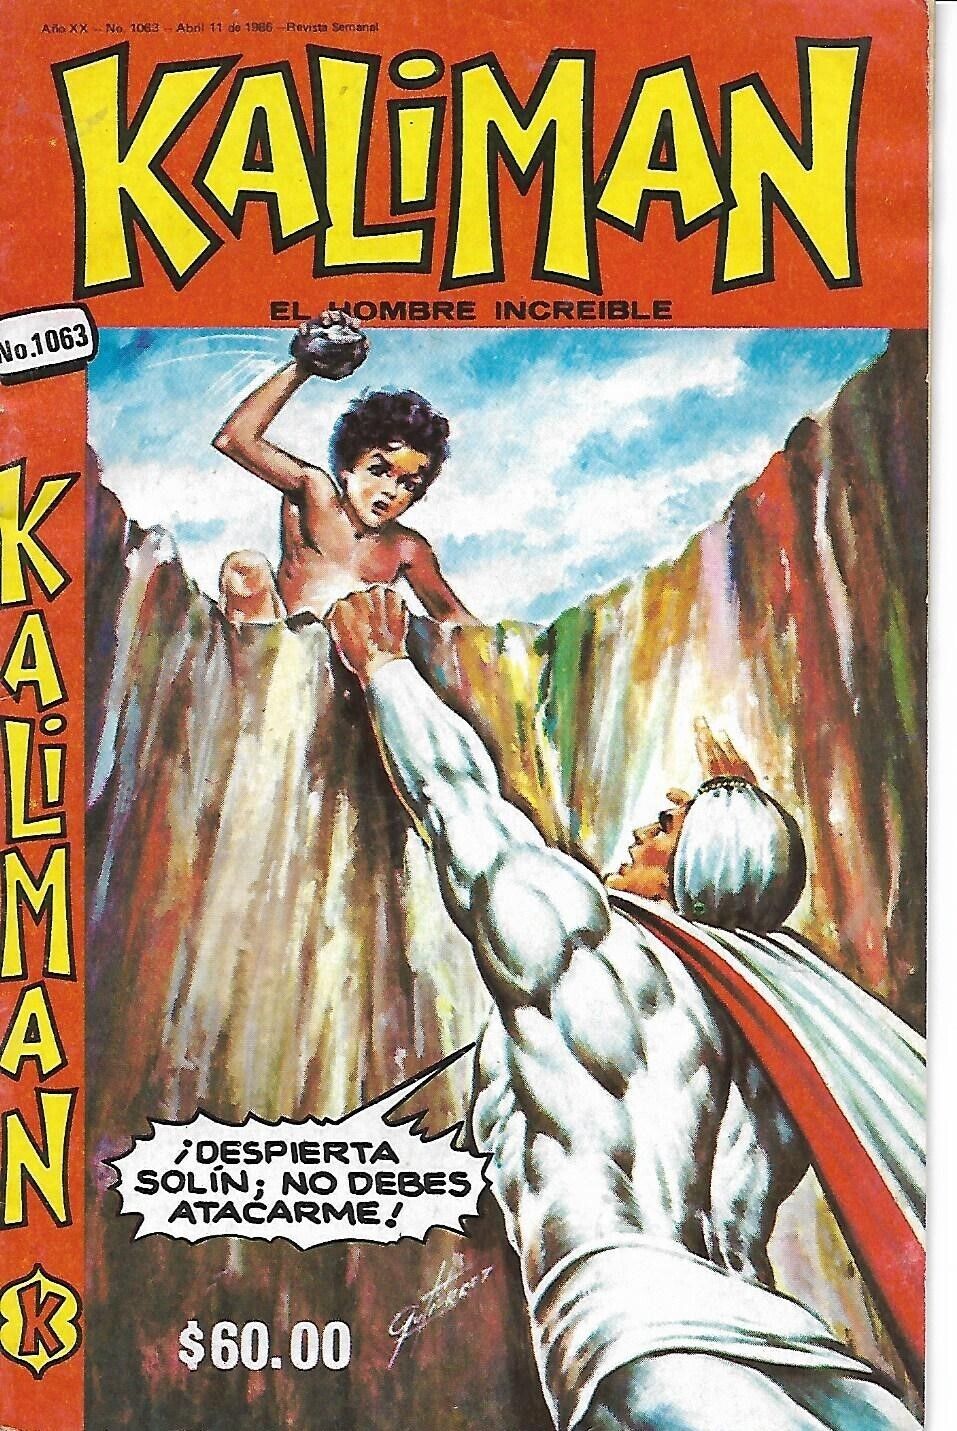 Kaliman El Hombre Increible #1063 - Abril 11, 1986